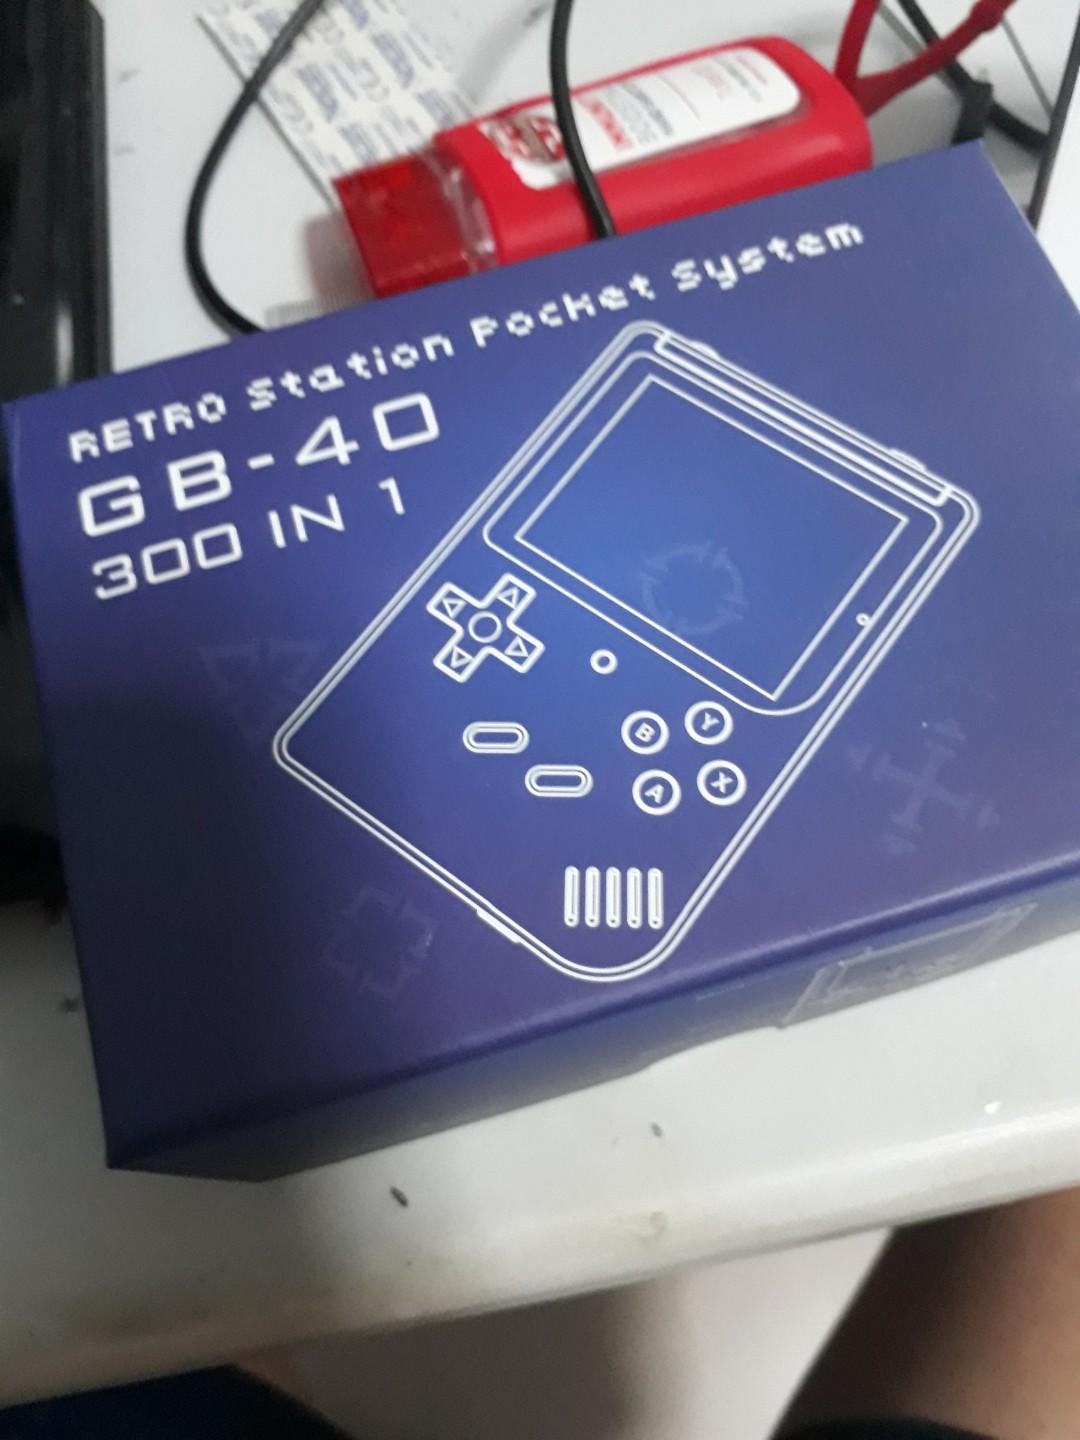 retro station pocket system gb40